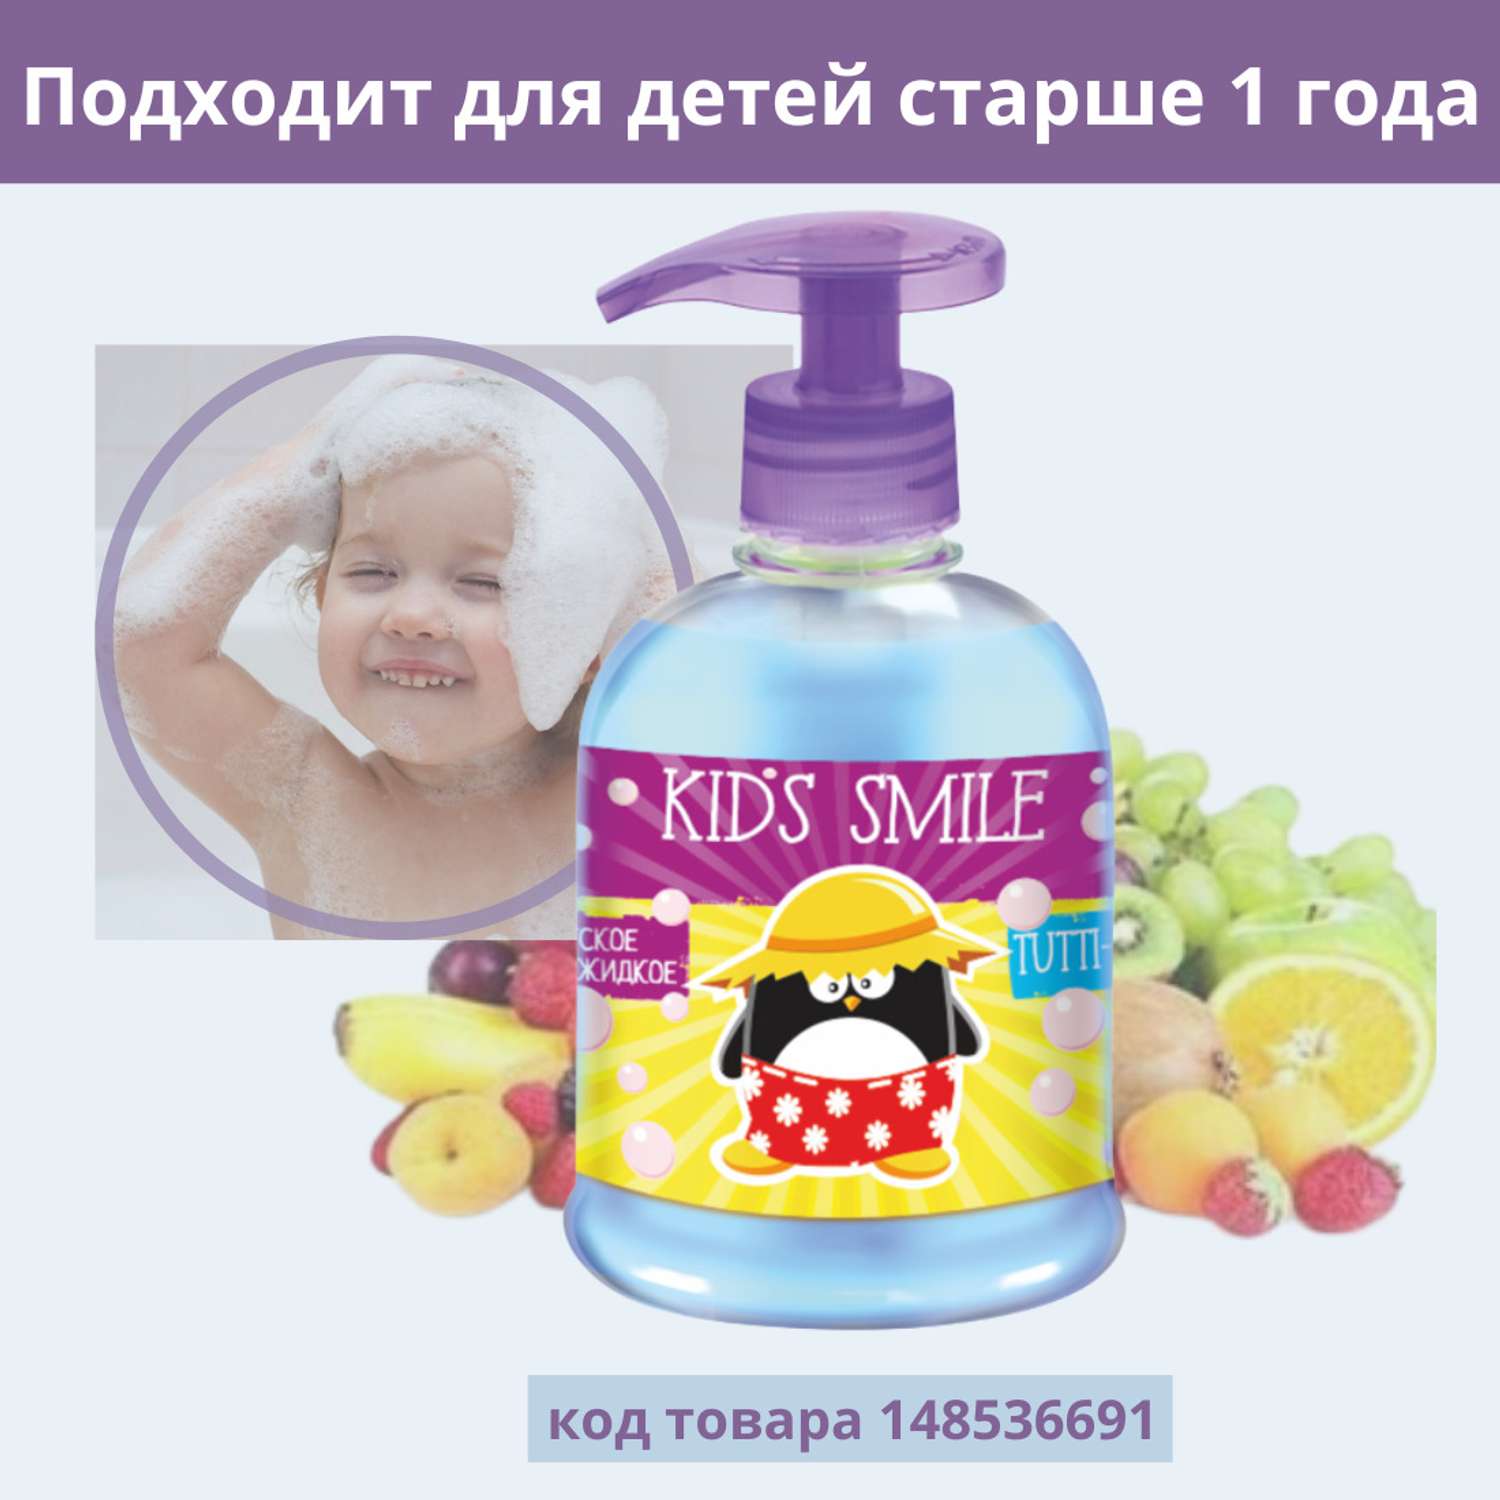 Жидкое мыло ROMAX детское Kids Smile Тутти Фрутти 500 г - фото 2